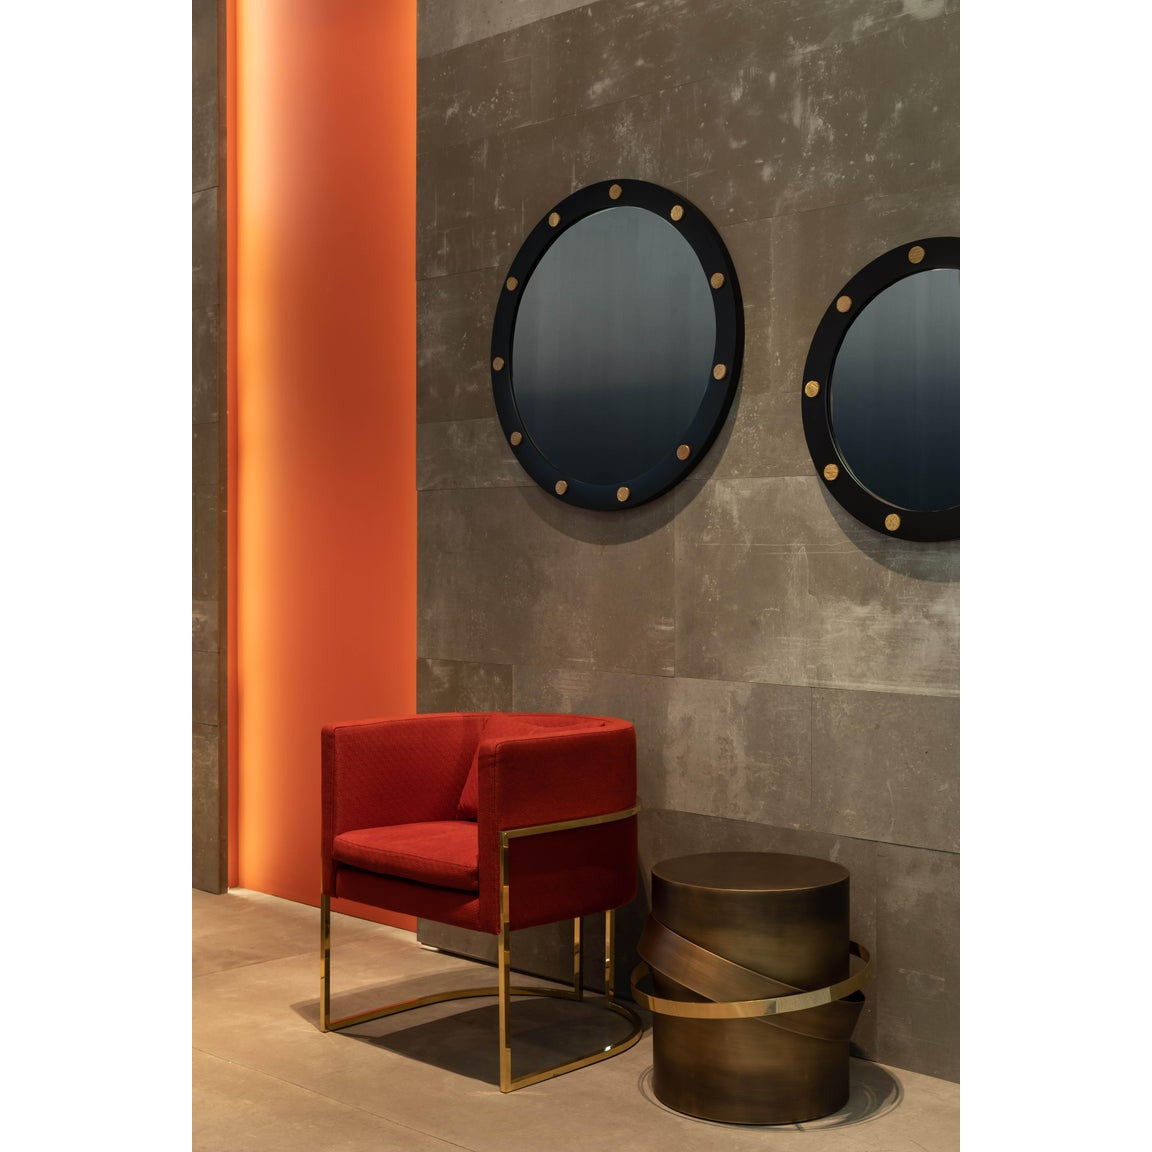 21st Century Cluster Round Mirror Matt Black Lacquered Iron | Modern Furniture + Decor